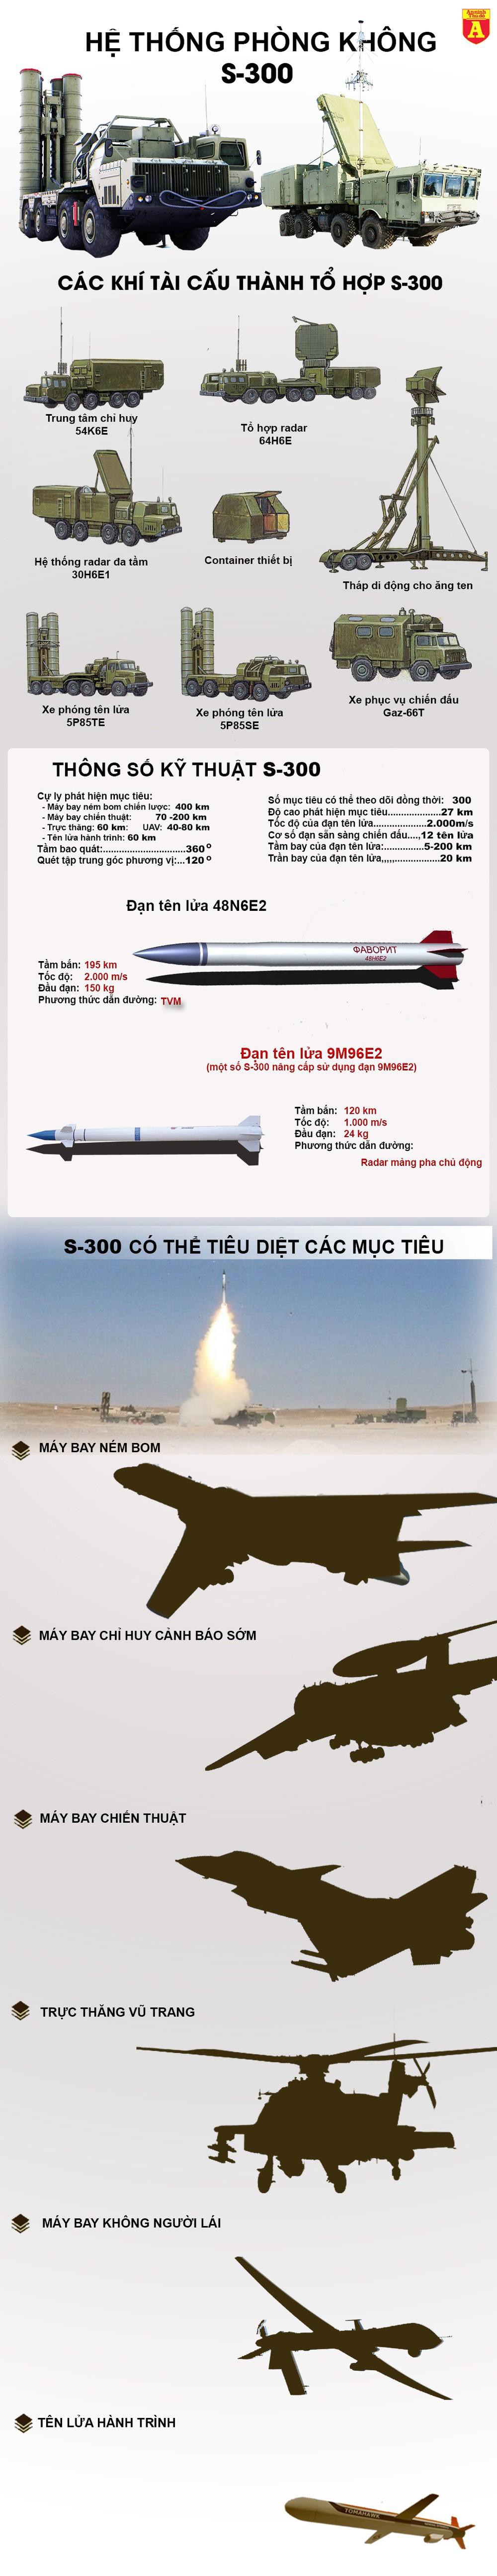 Hé lộ bí mật về tên lửa S-300 trong các cuộc giao tranh giữa Ukraine và Nga  - Ảnh 1